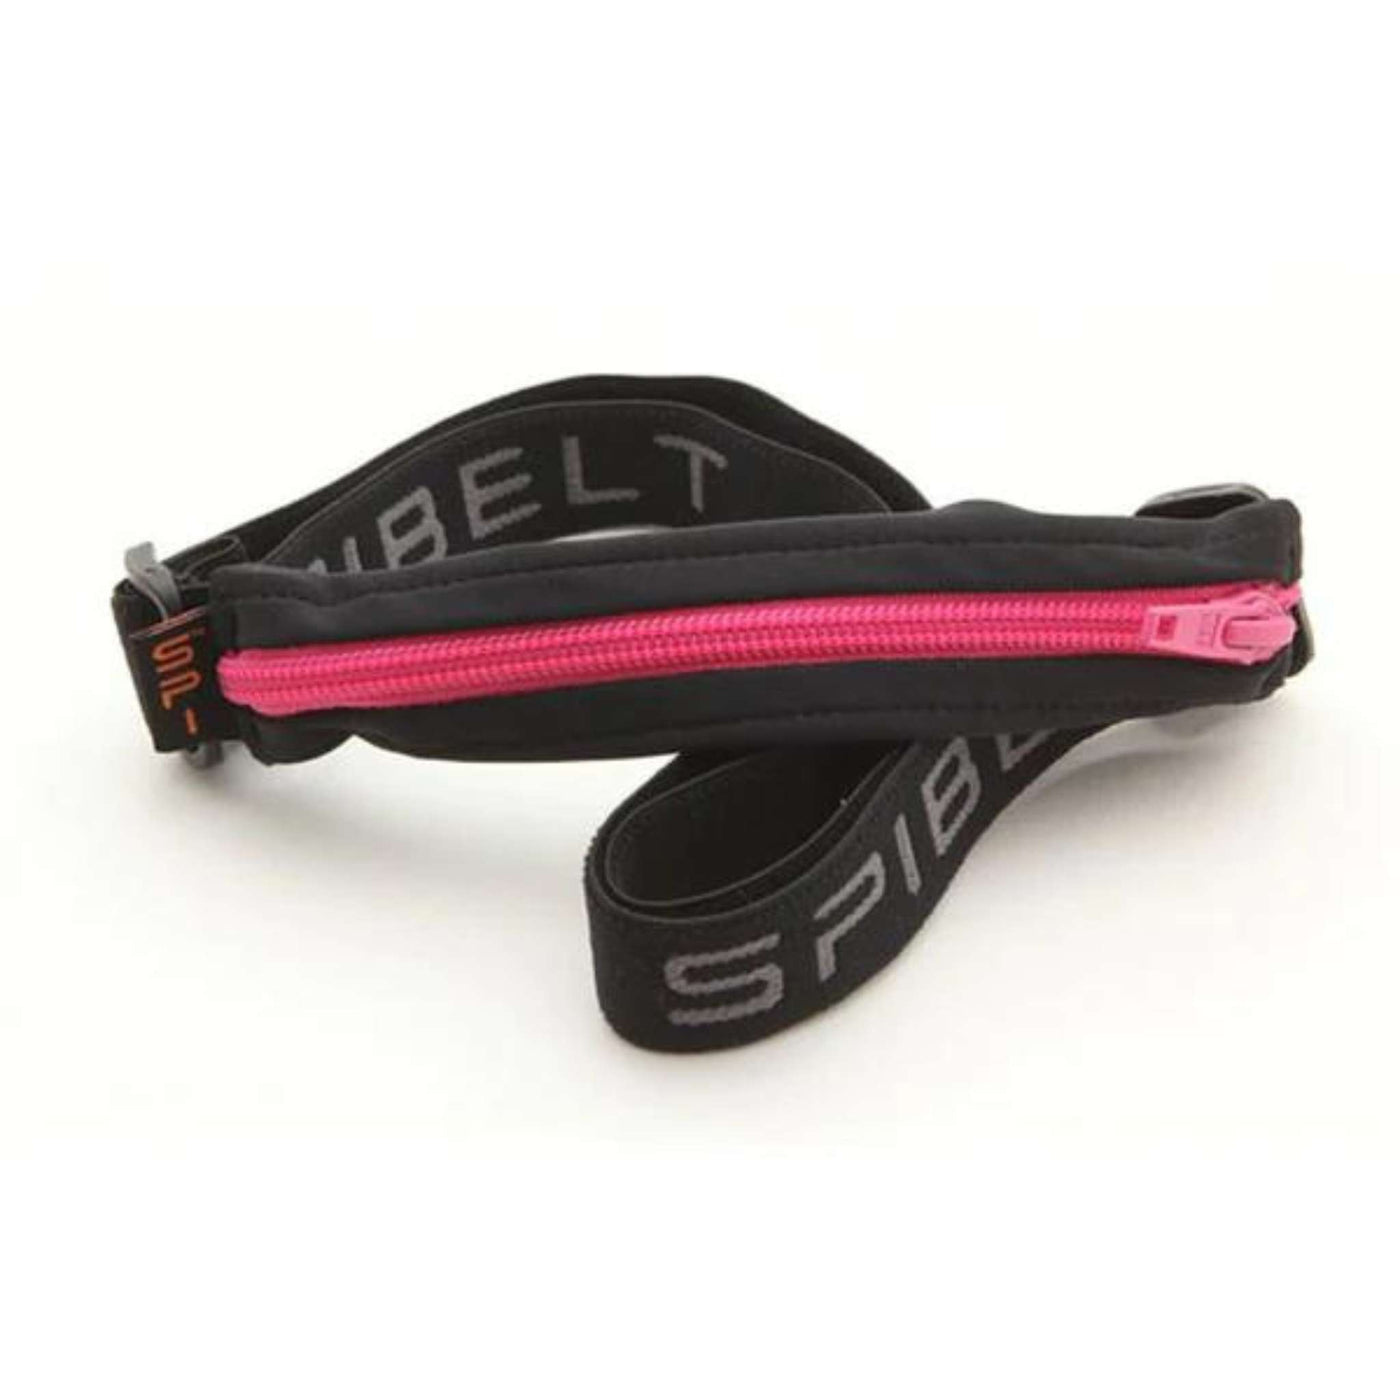 SPIbelt Original Belt | Running Belt | Further Faster Christchurch NZ #black-with-hot-pink-zip